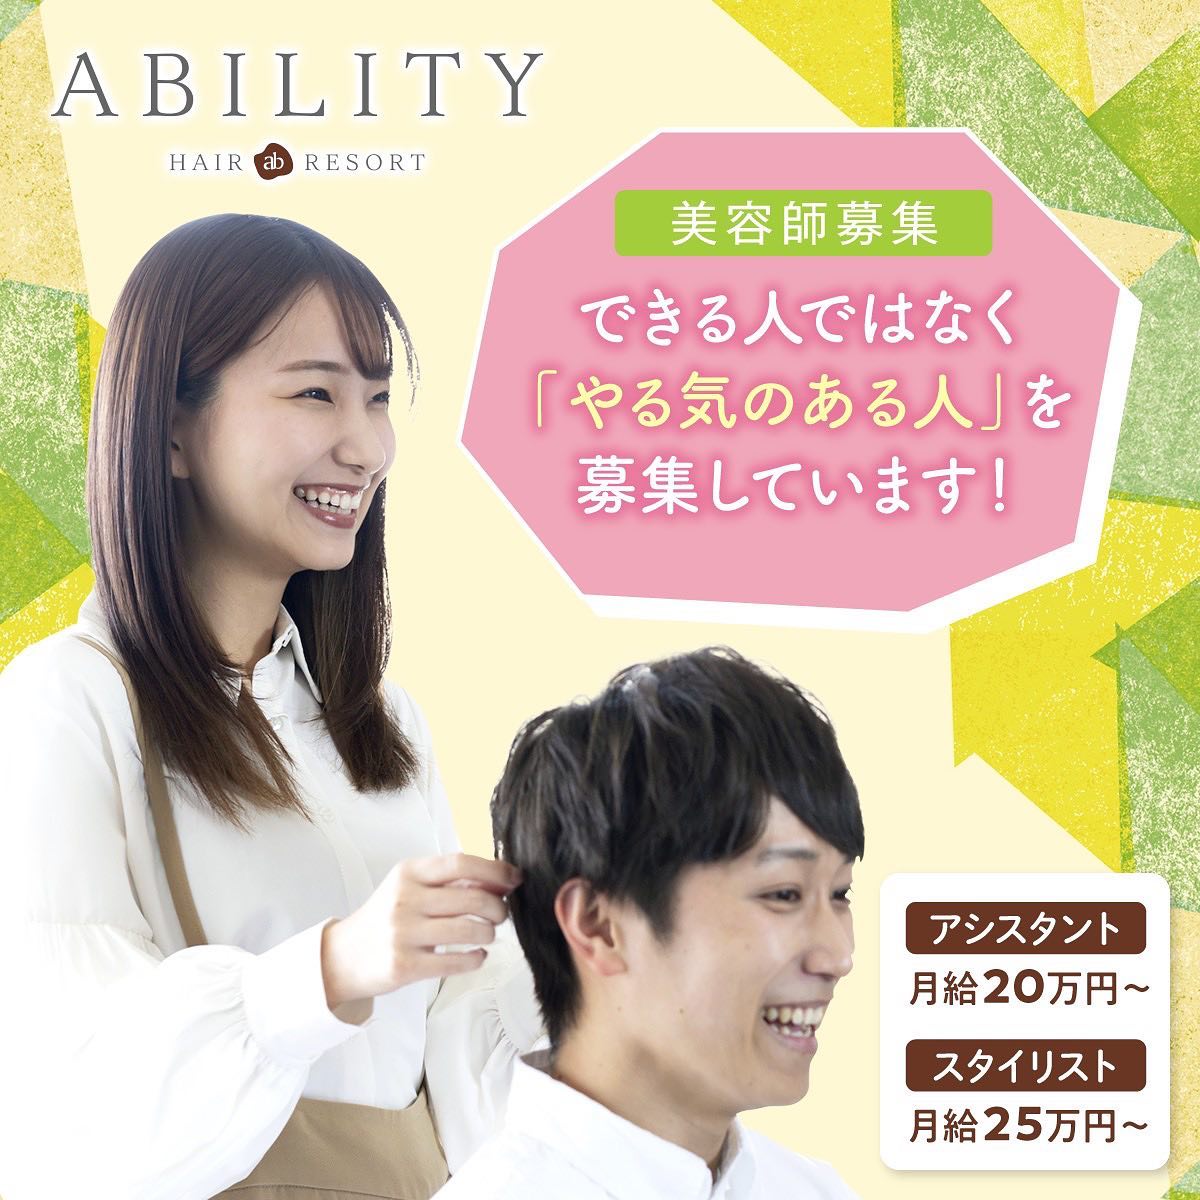 伊奈町の美容室アビリティability hair resort